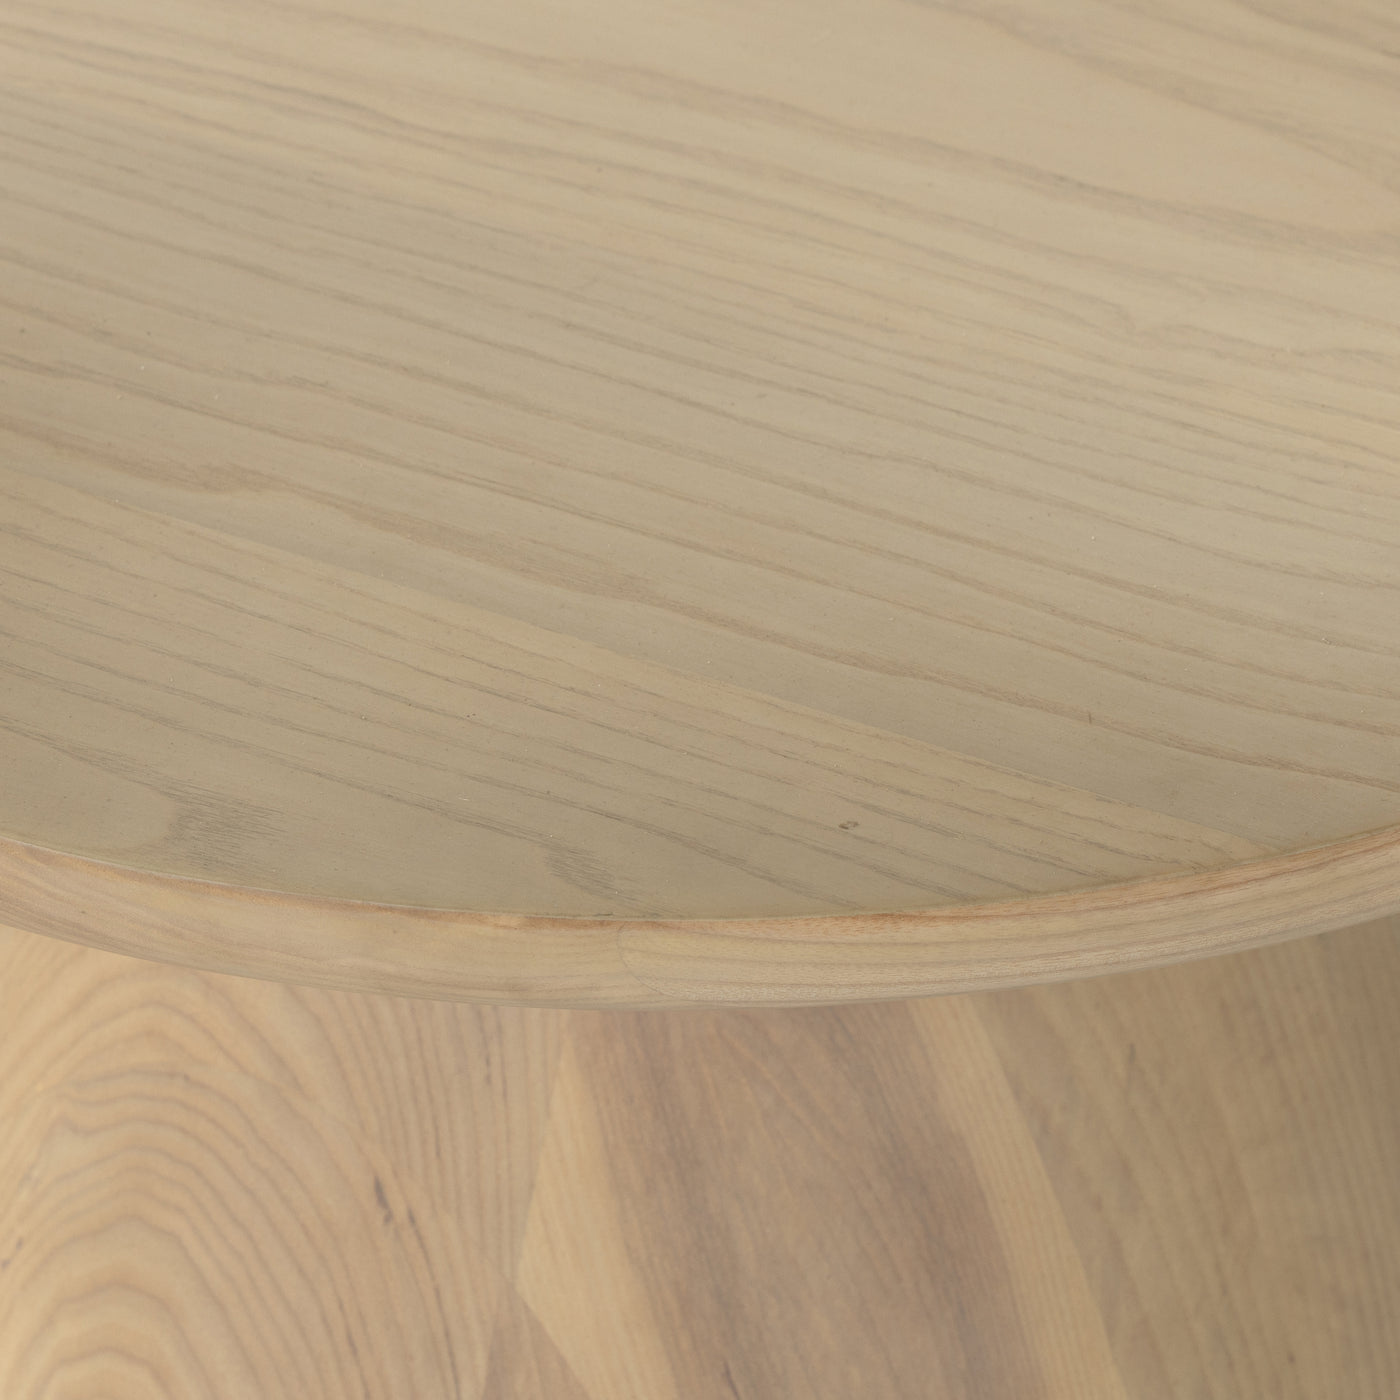 Merla Wood Coffee Table-Light Naturl Ash